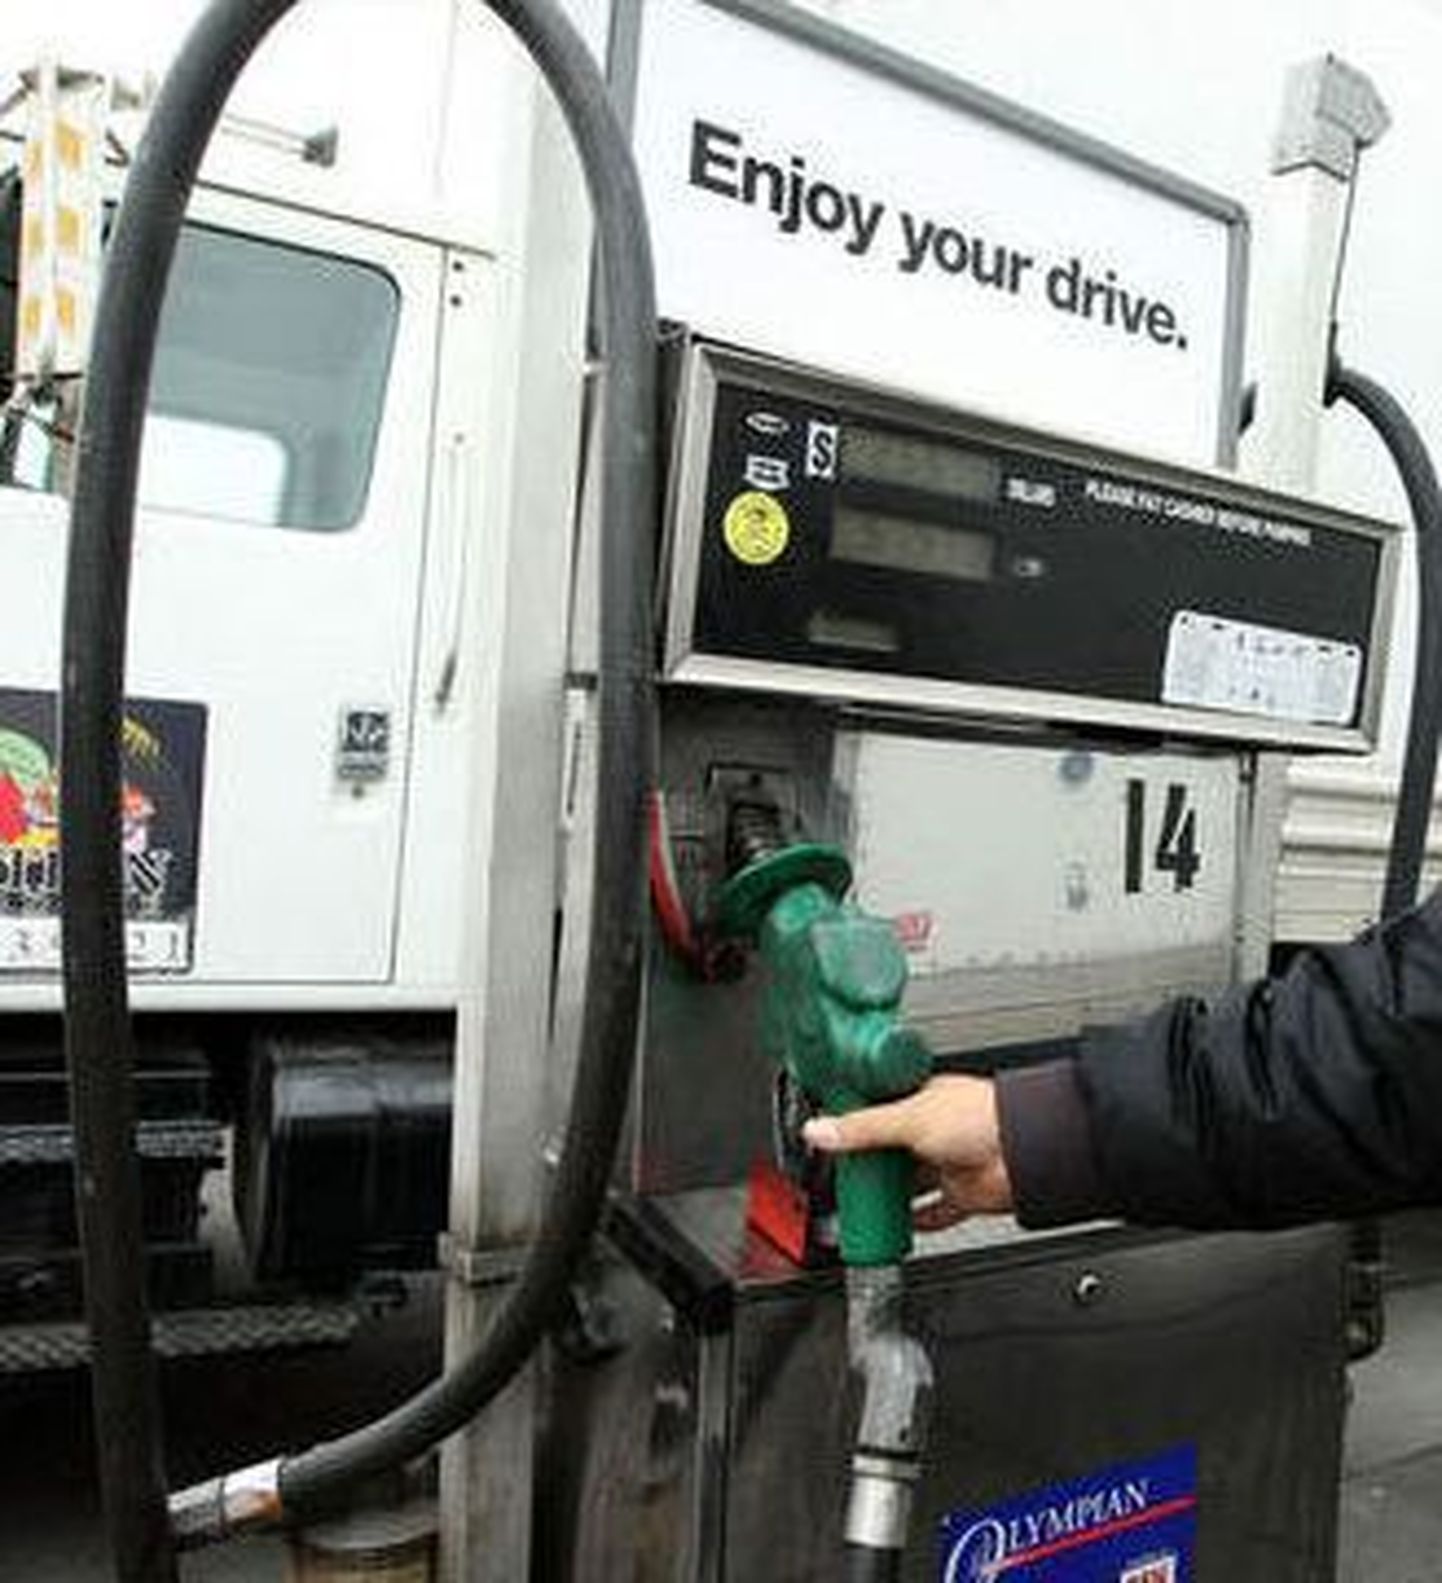 USA bordell pakub klientidele tasuta bensiini